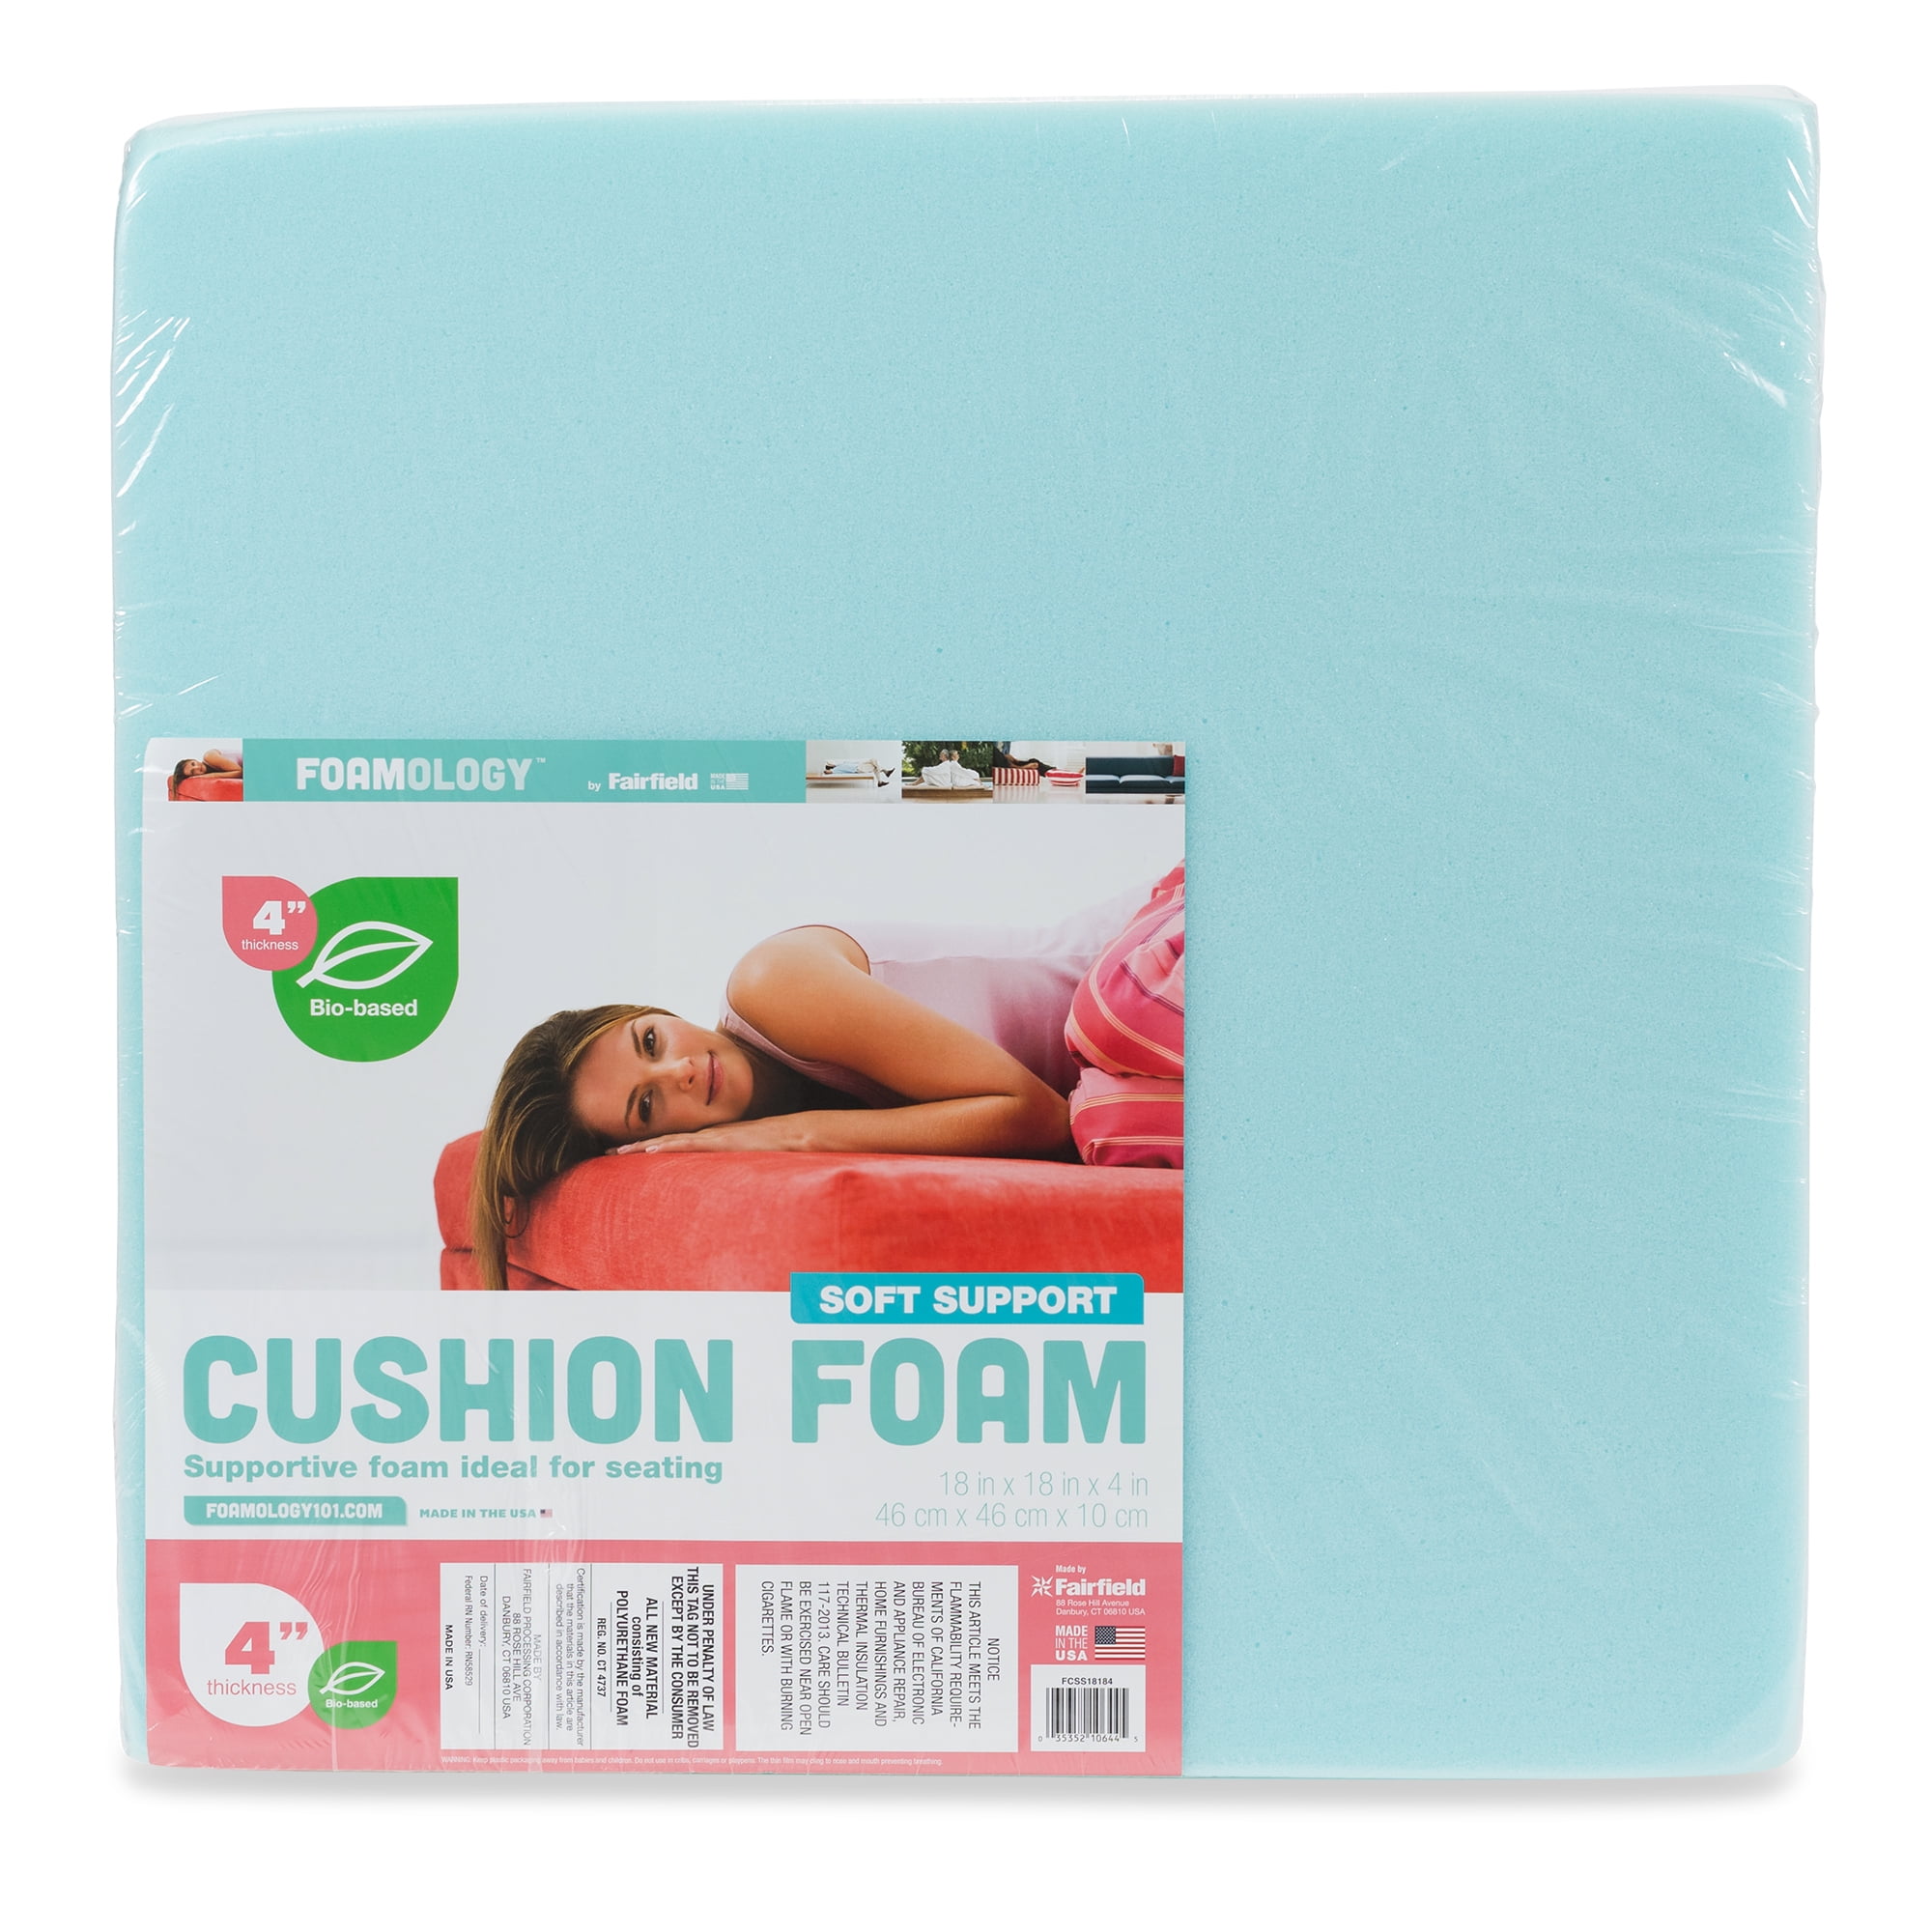 Cushion Foam Tuffet Kit by Fairfield™, 18 x 18 x 6 thick